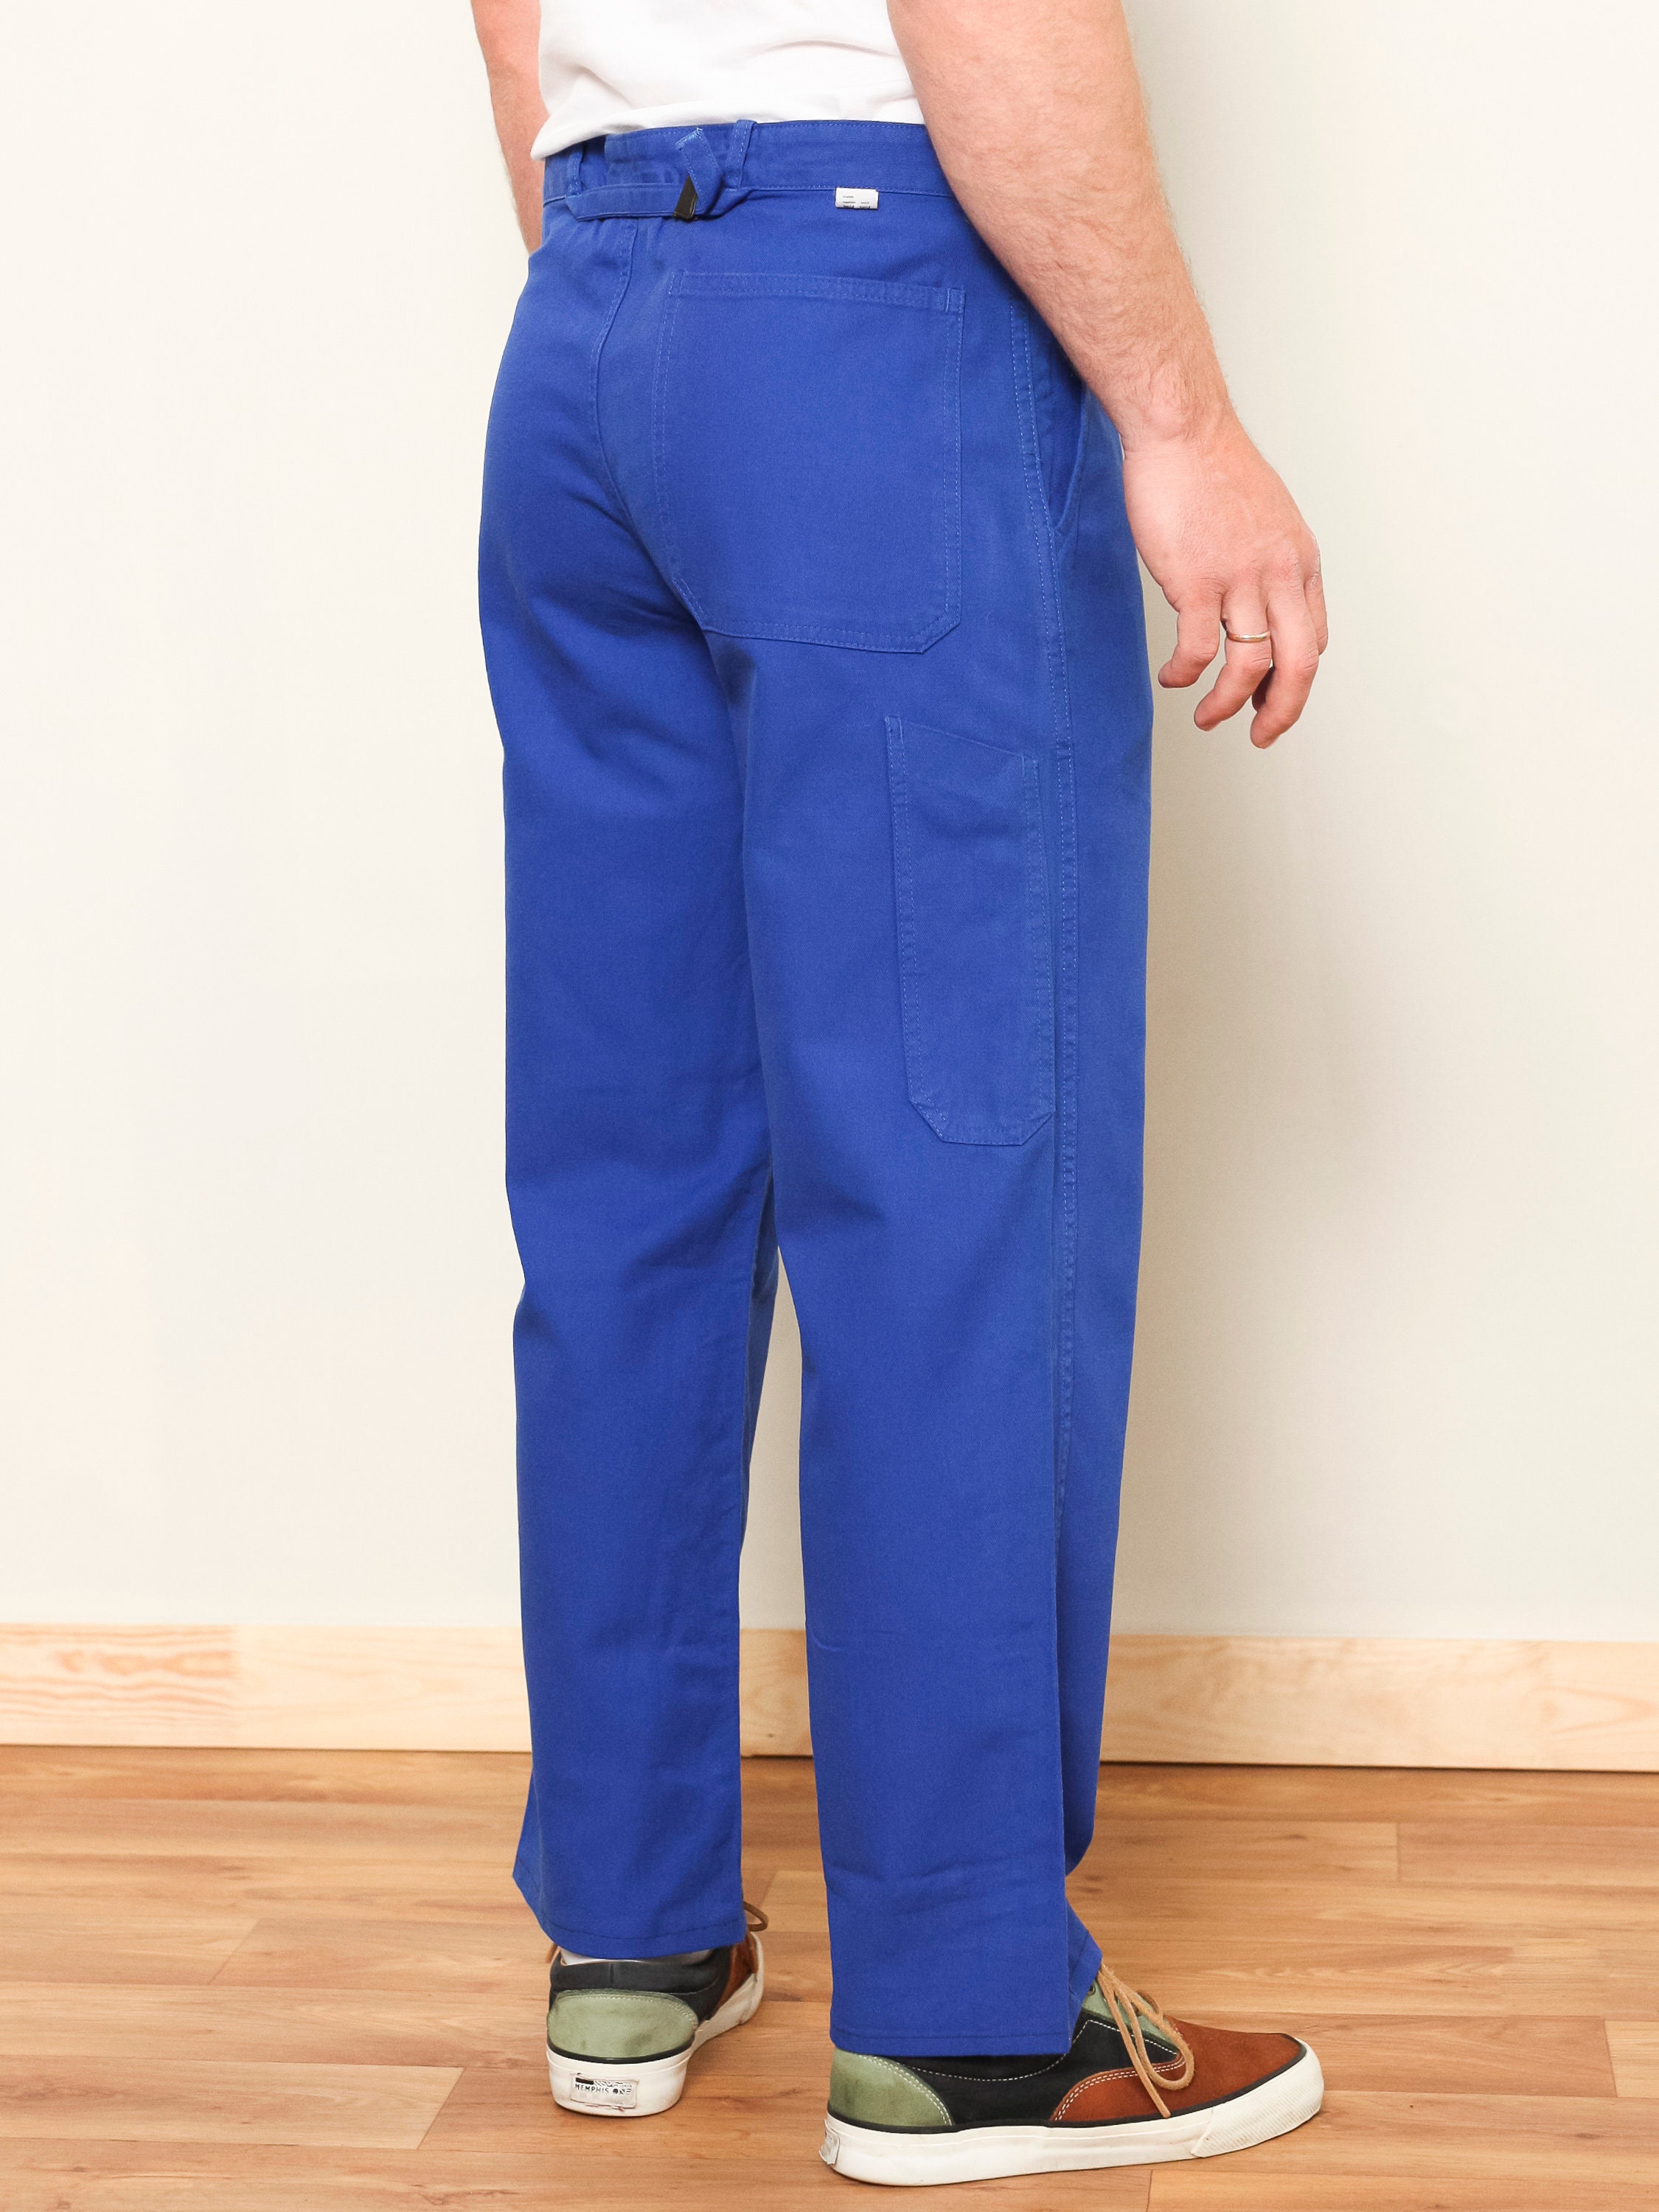 Blue Work Pants men vintage 80s wide chore pants trousers men casual ...